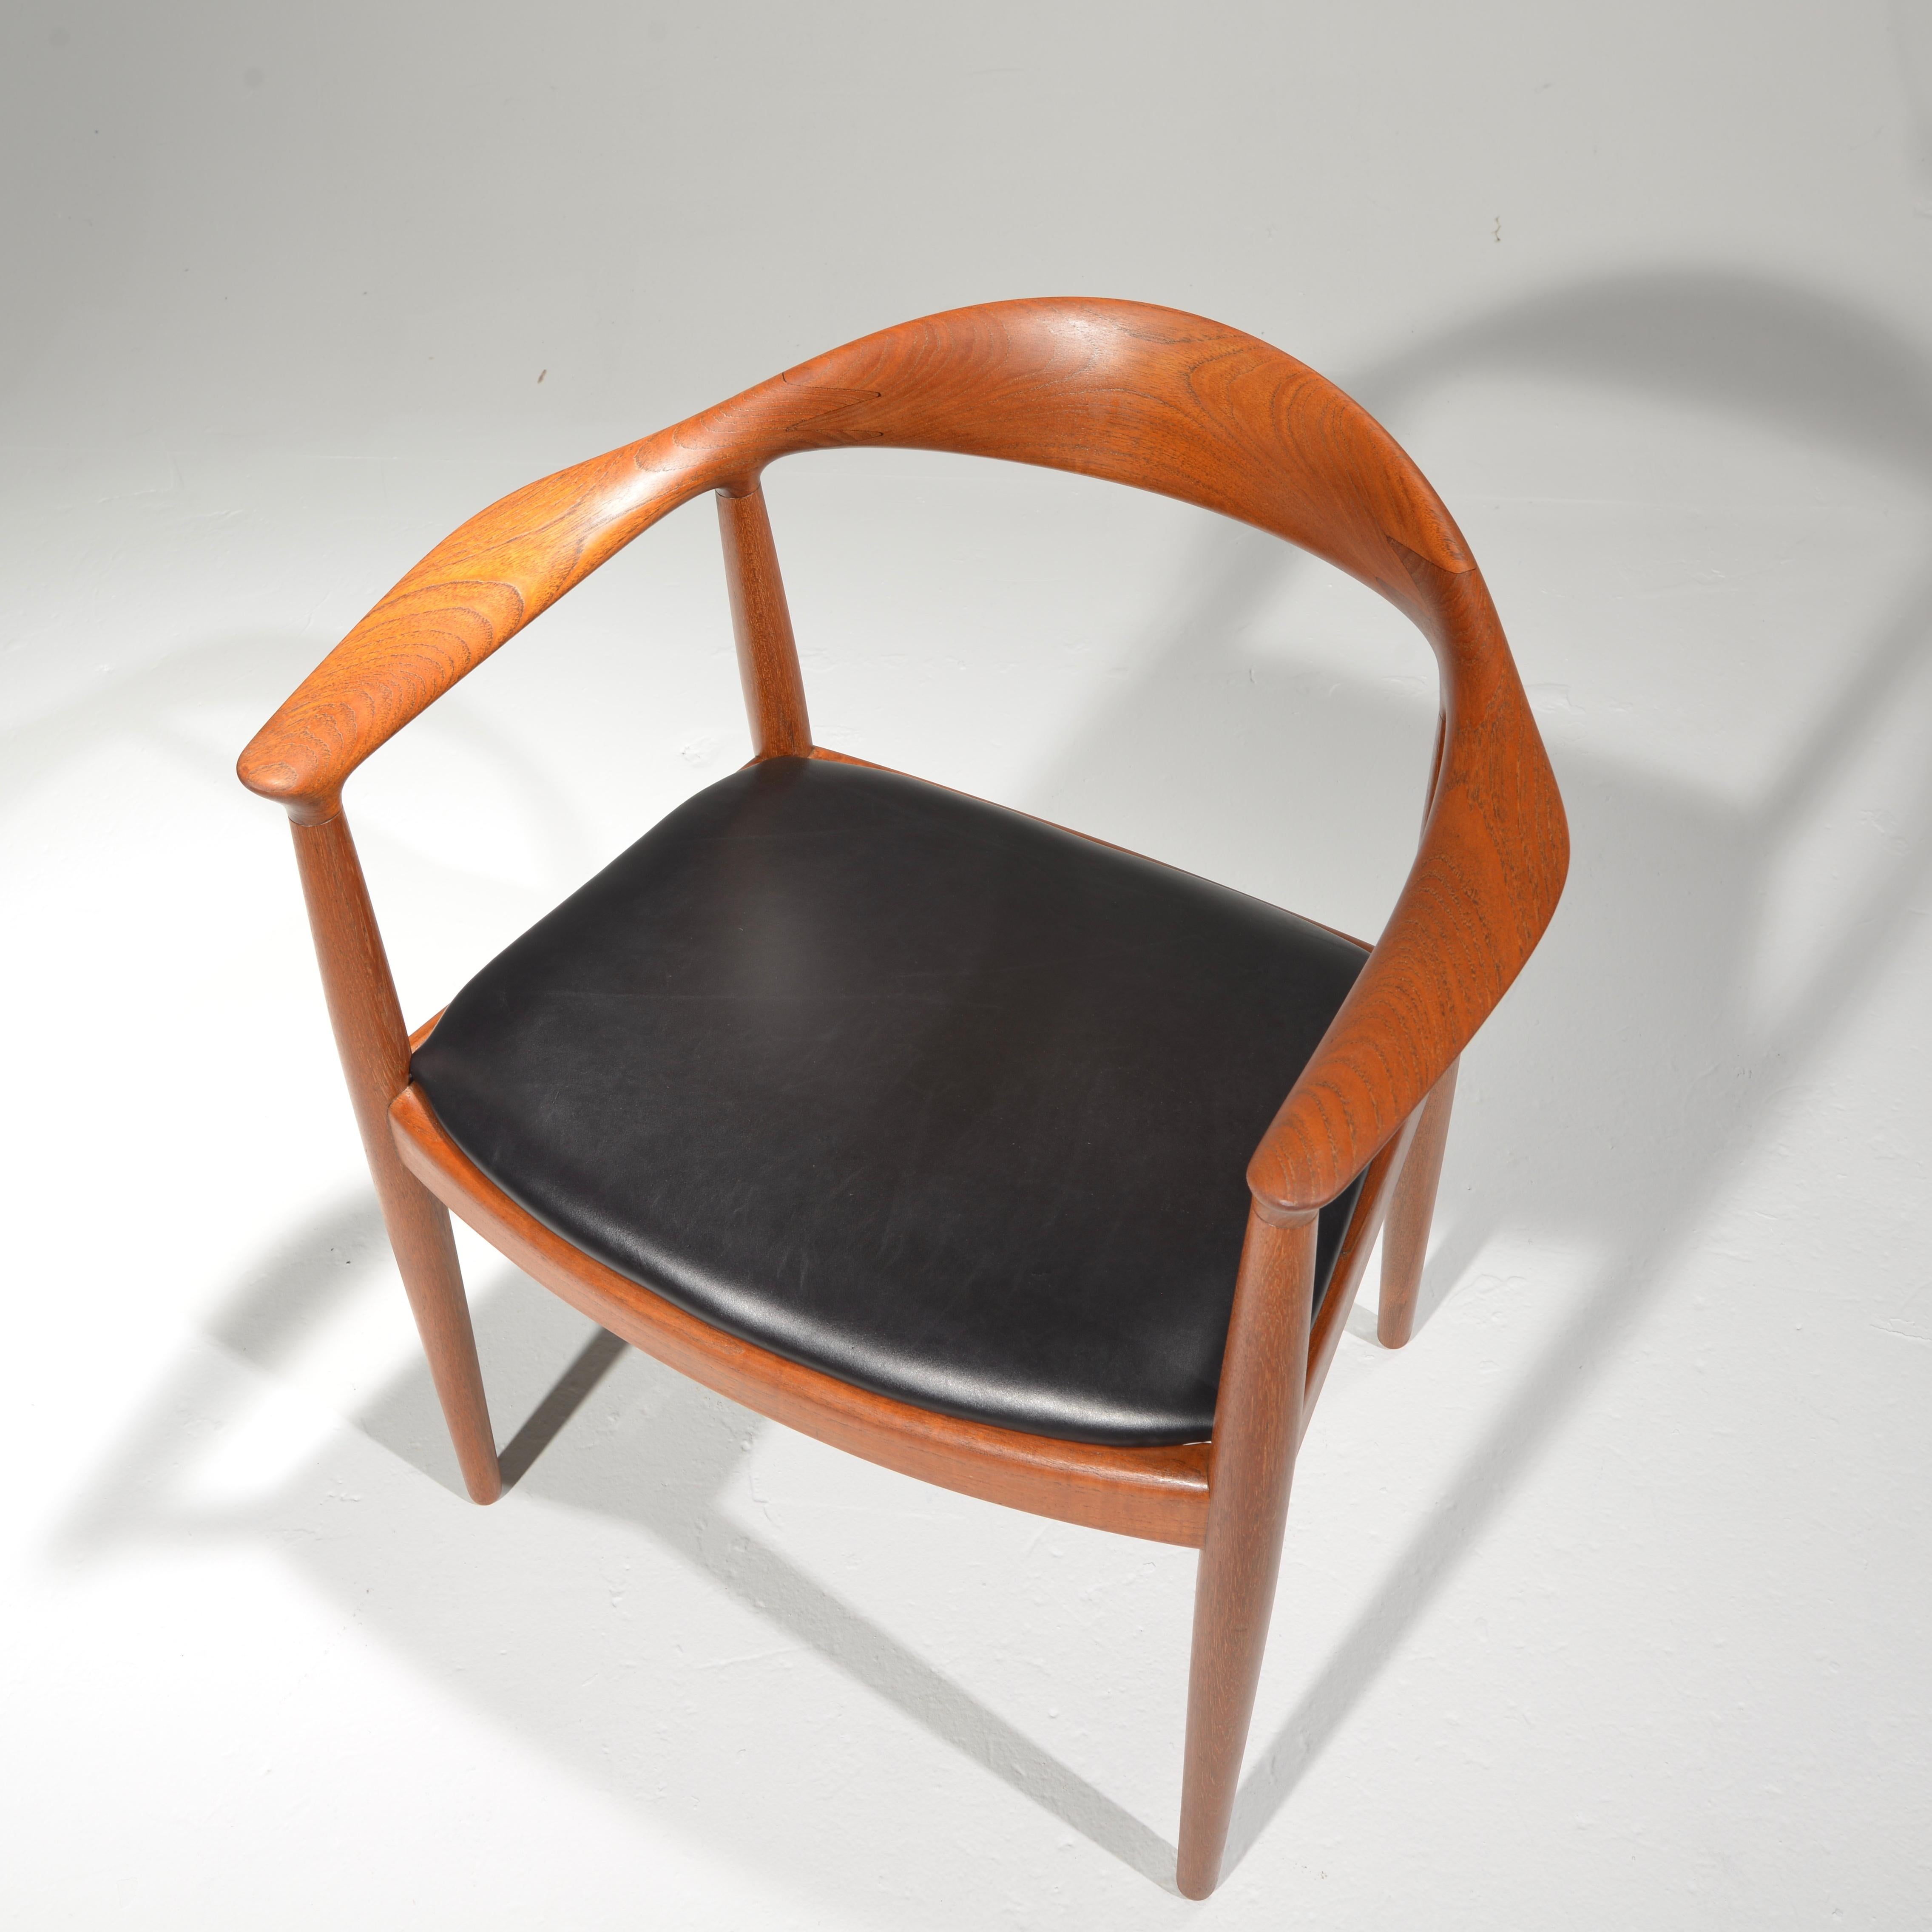 Danish 10 Hans Wegner for Johannes Hansen JH-503 Chairs in Teak and Leather For Sale